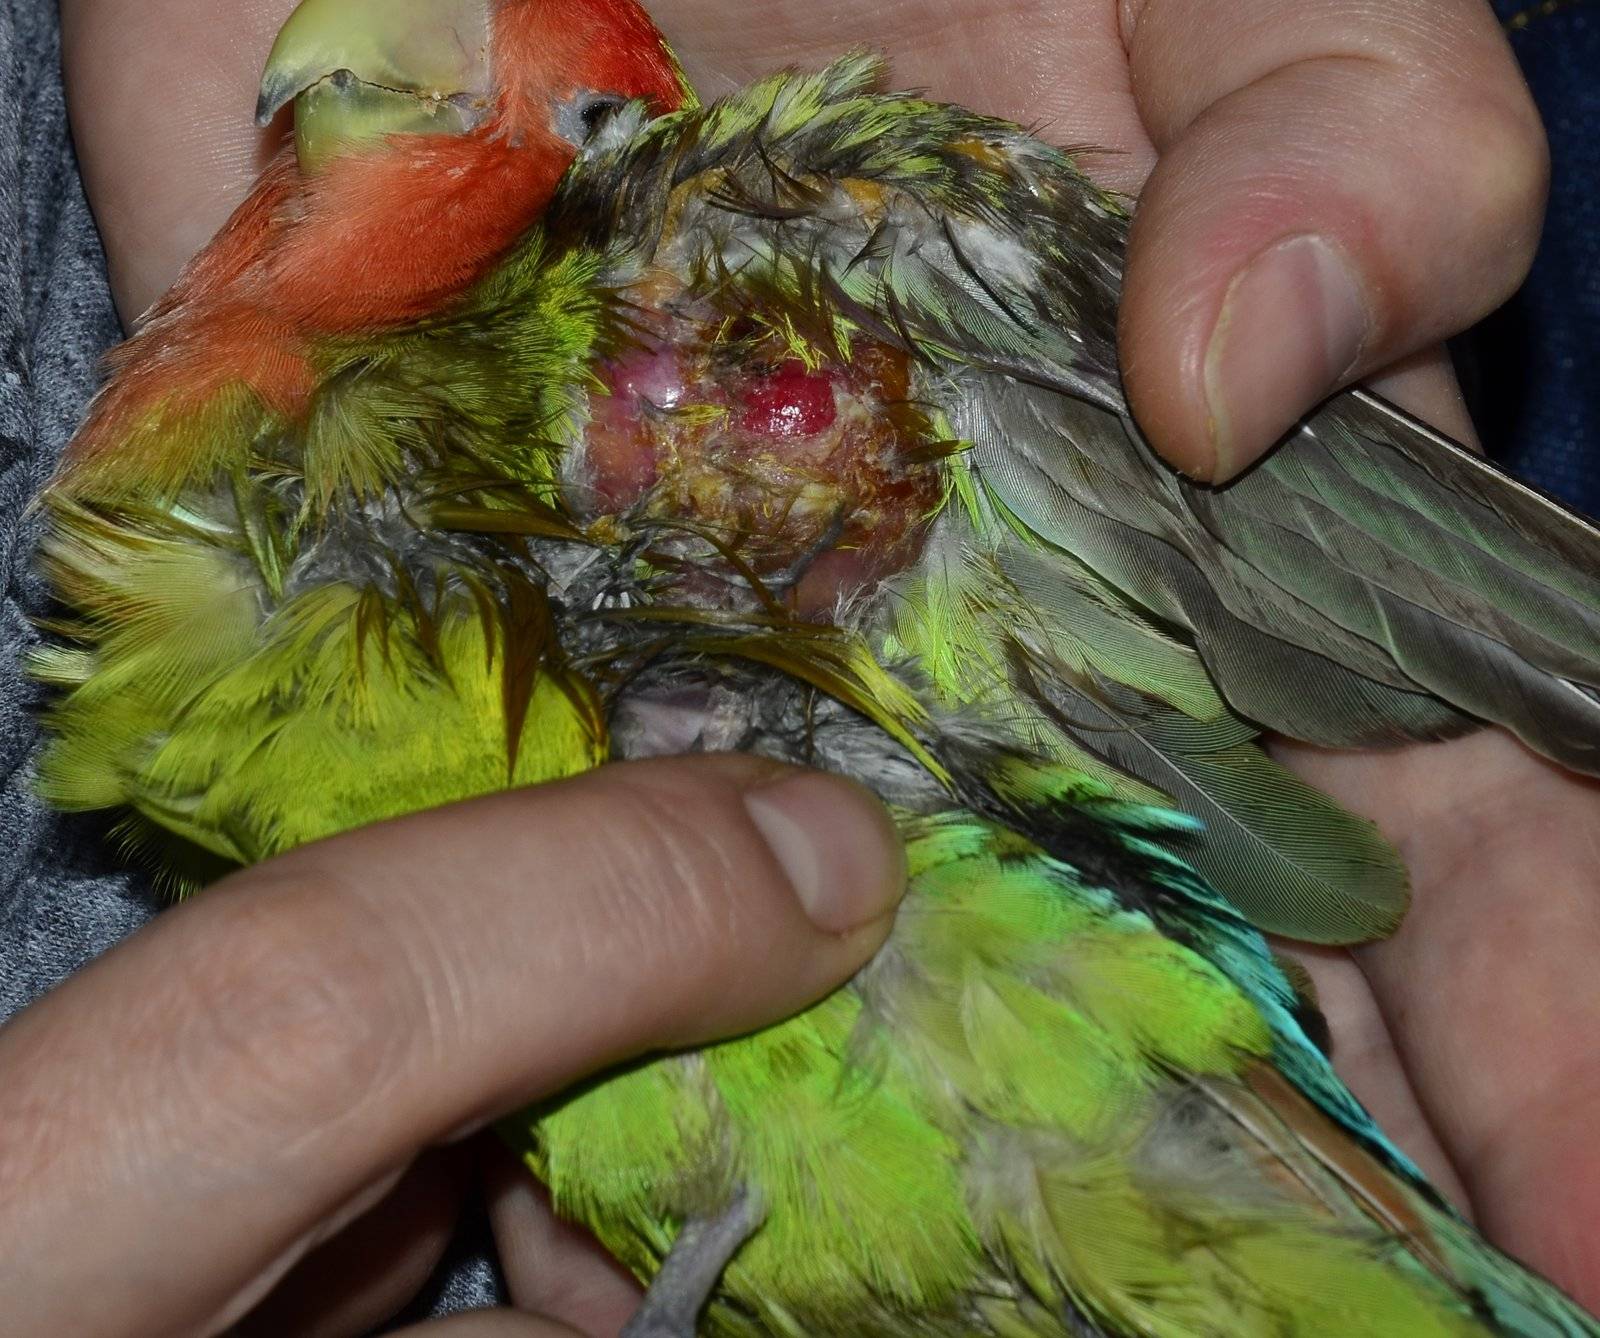 Волнистый попугай чешется: что делать и почему это бывает